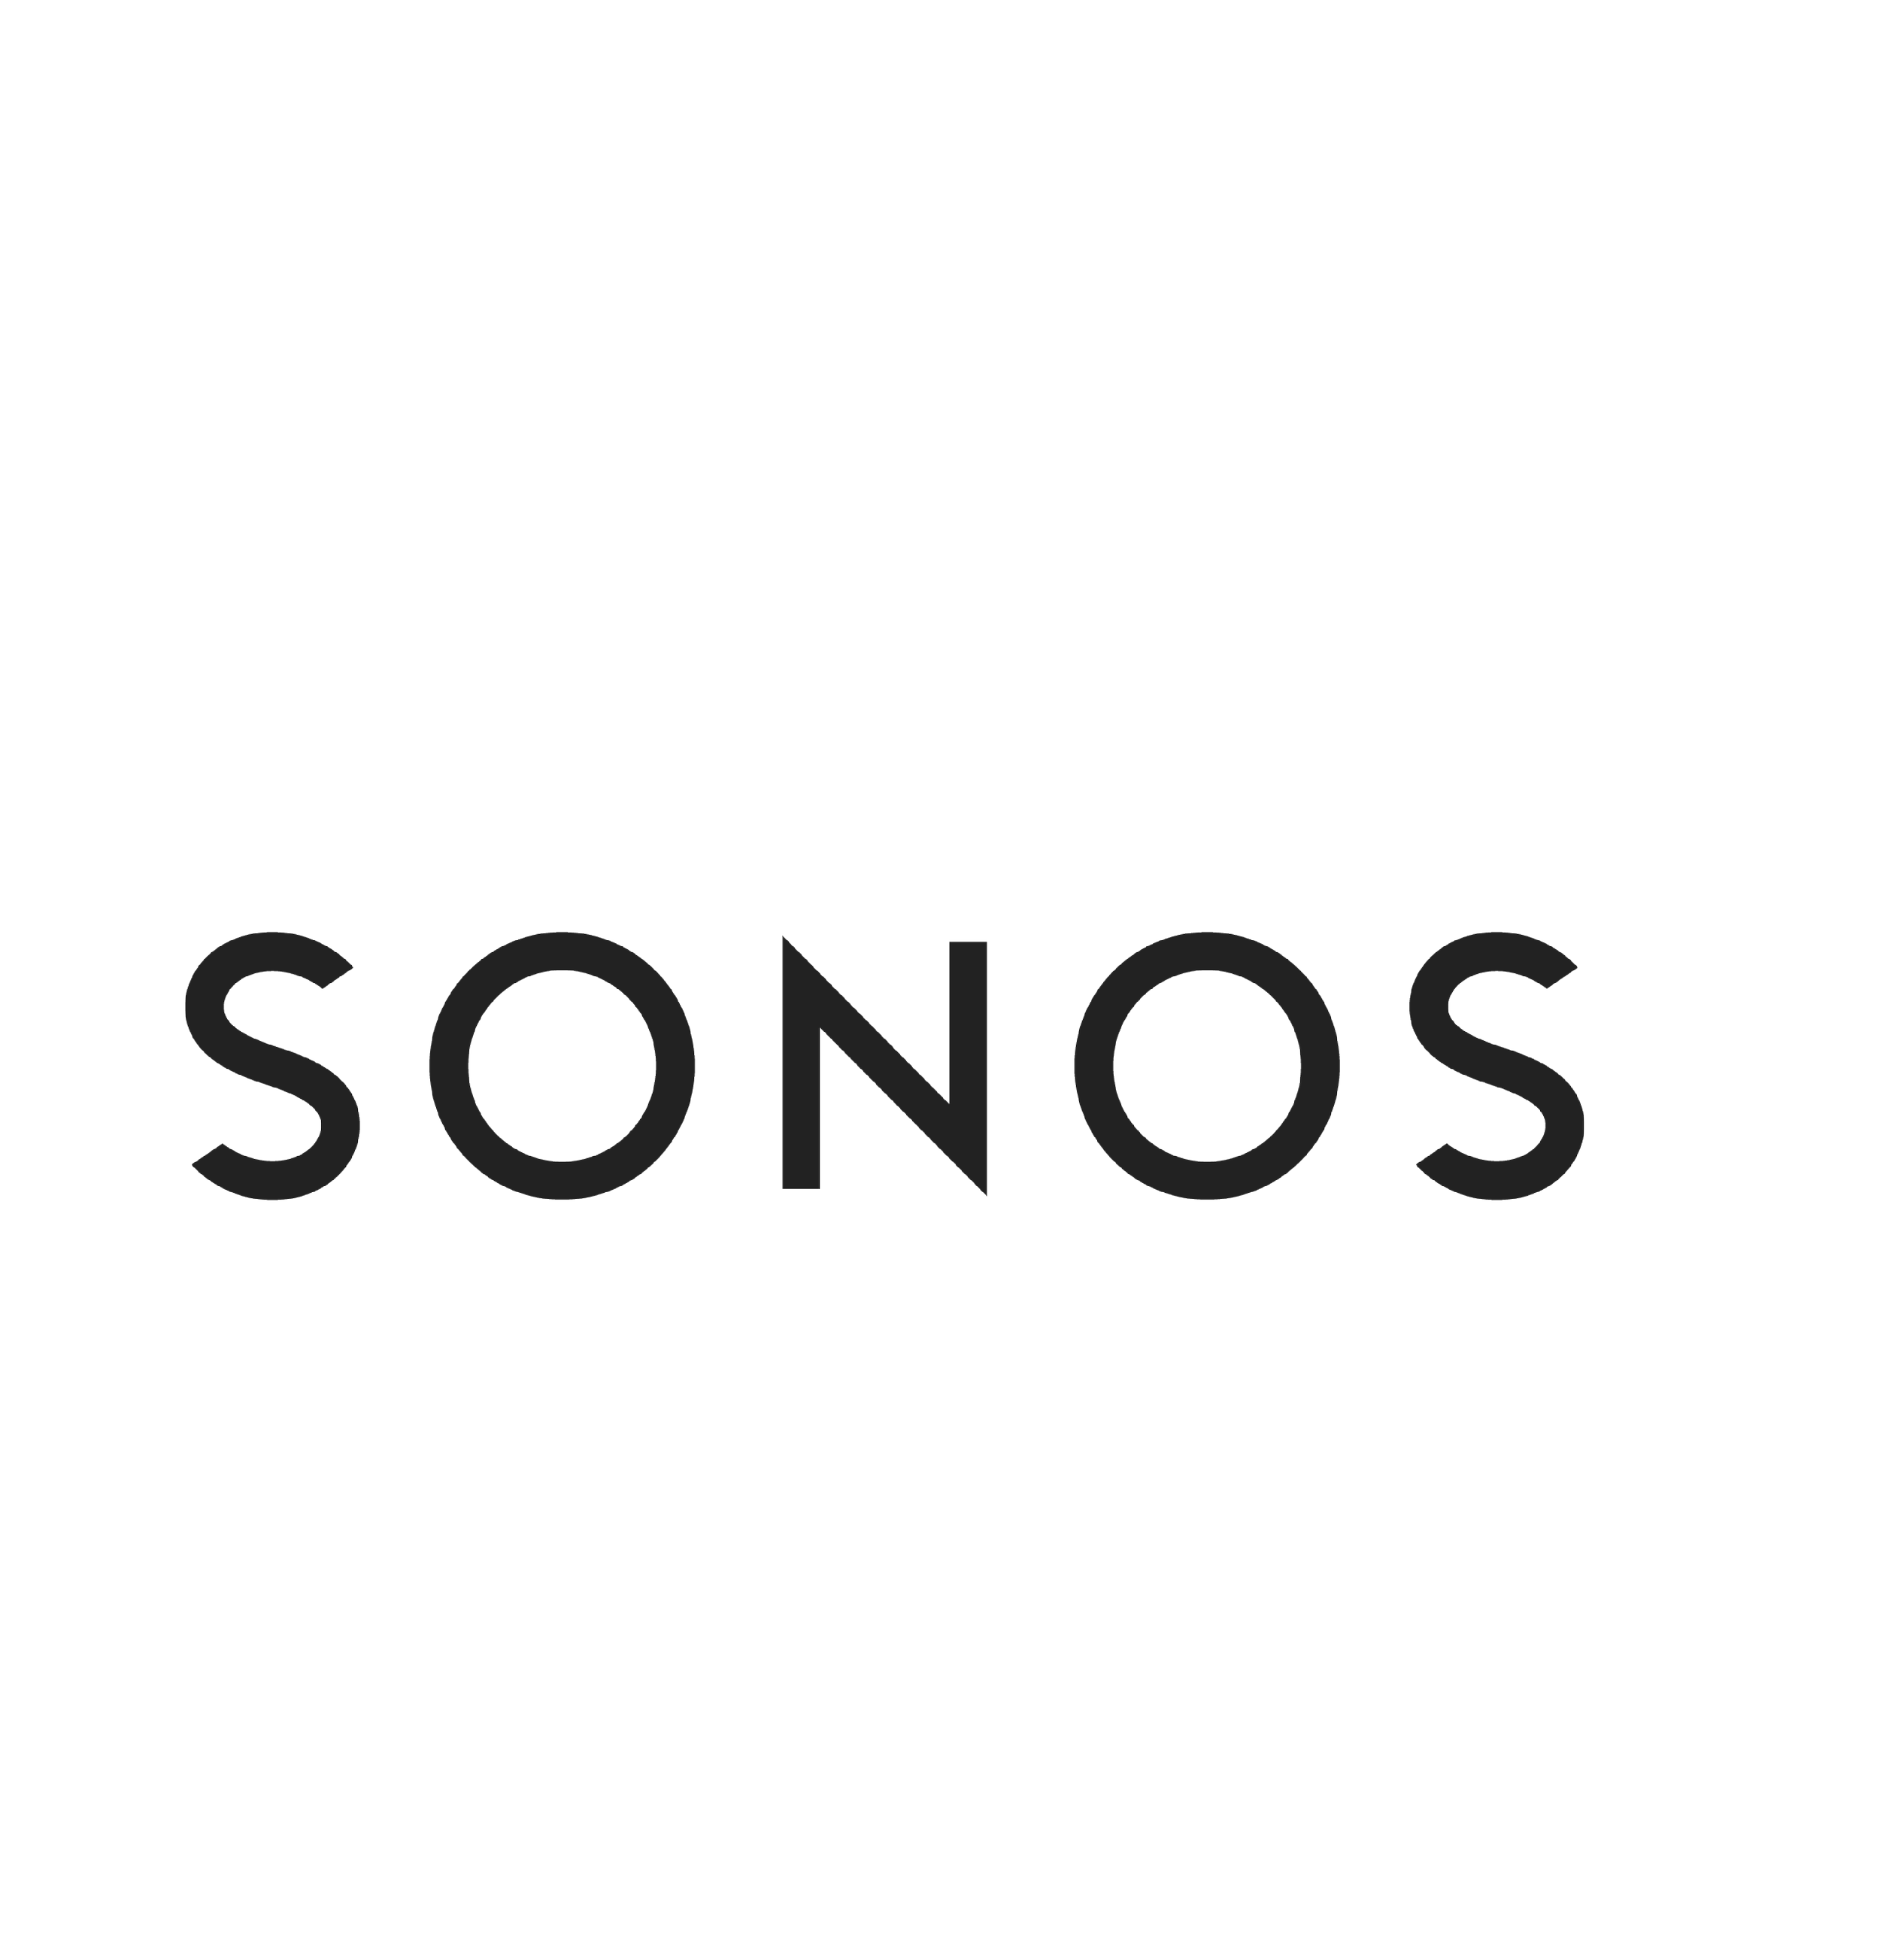 Sonos.png